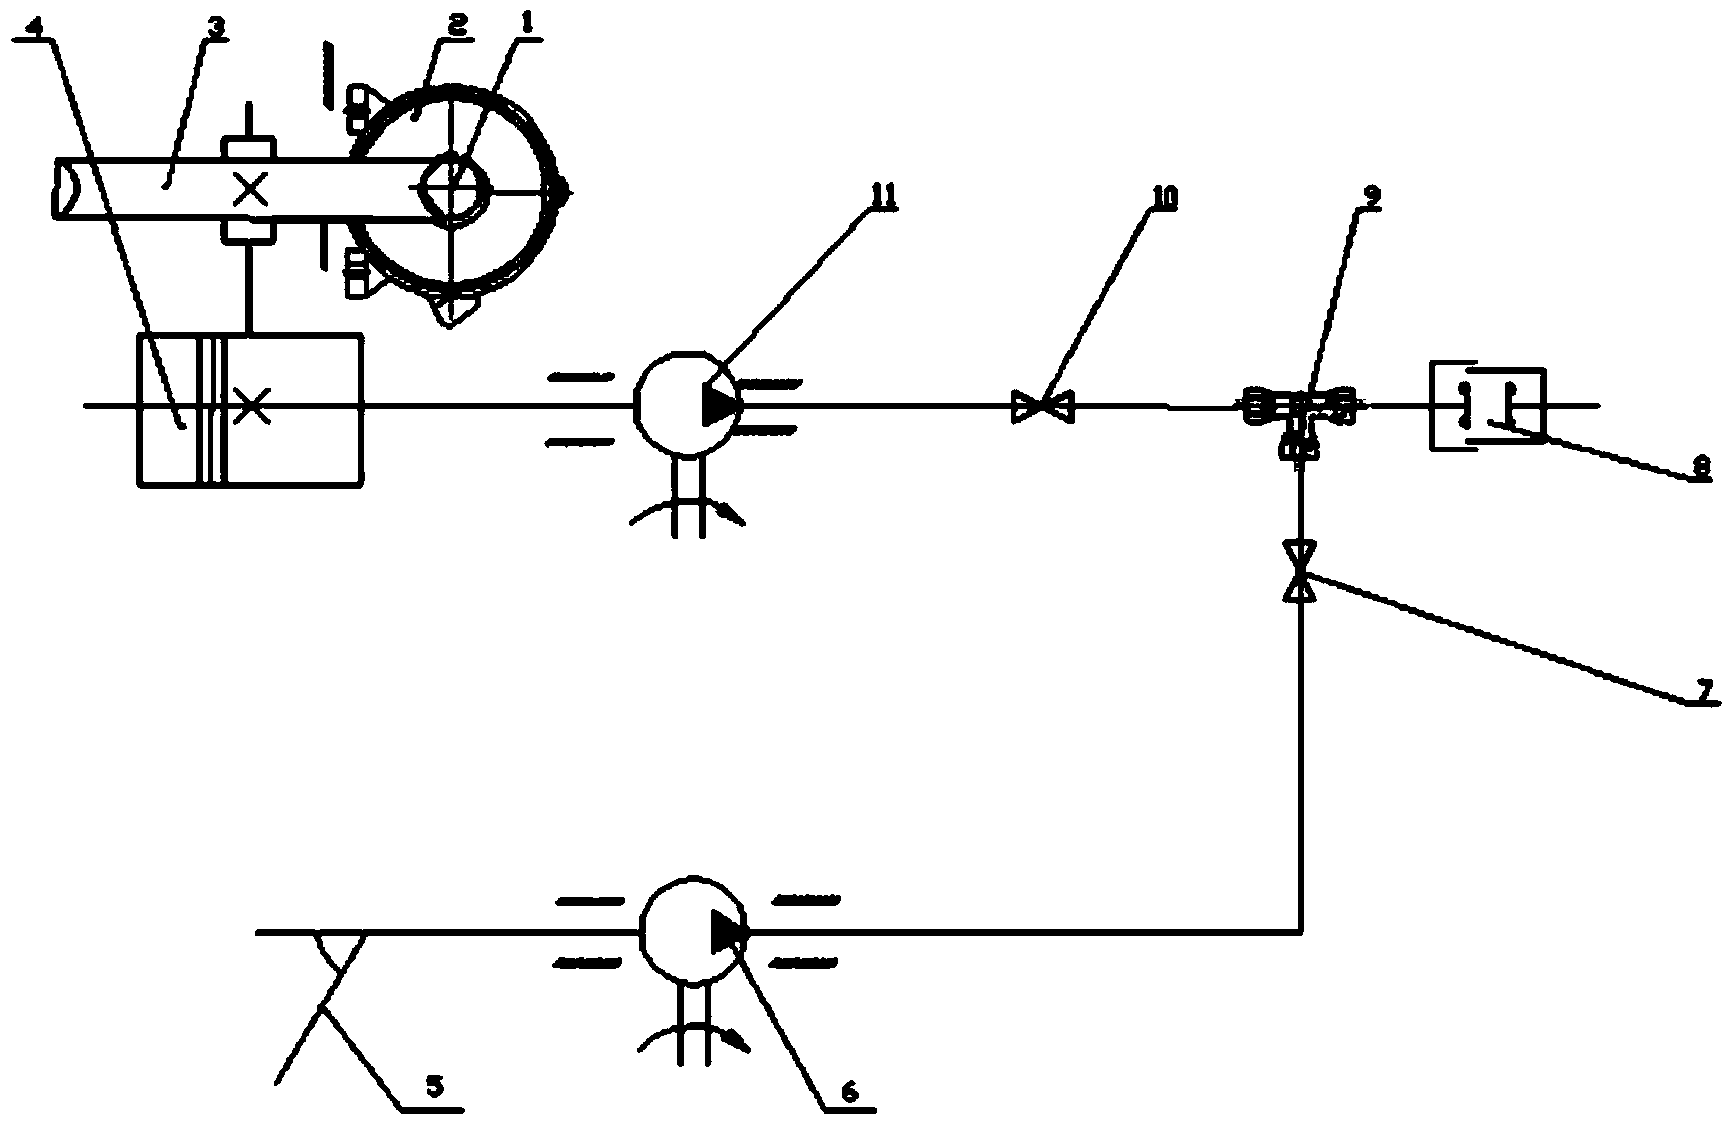 AMT clutch actuating mechanism